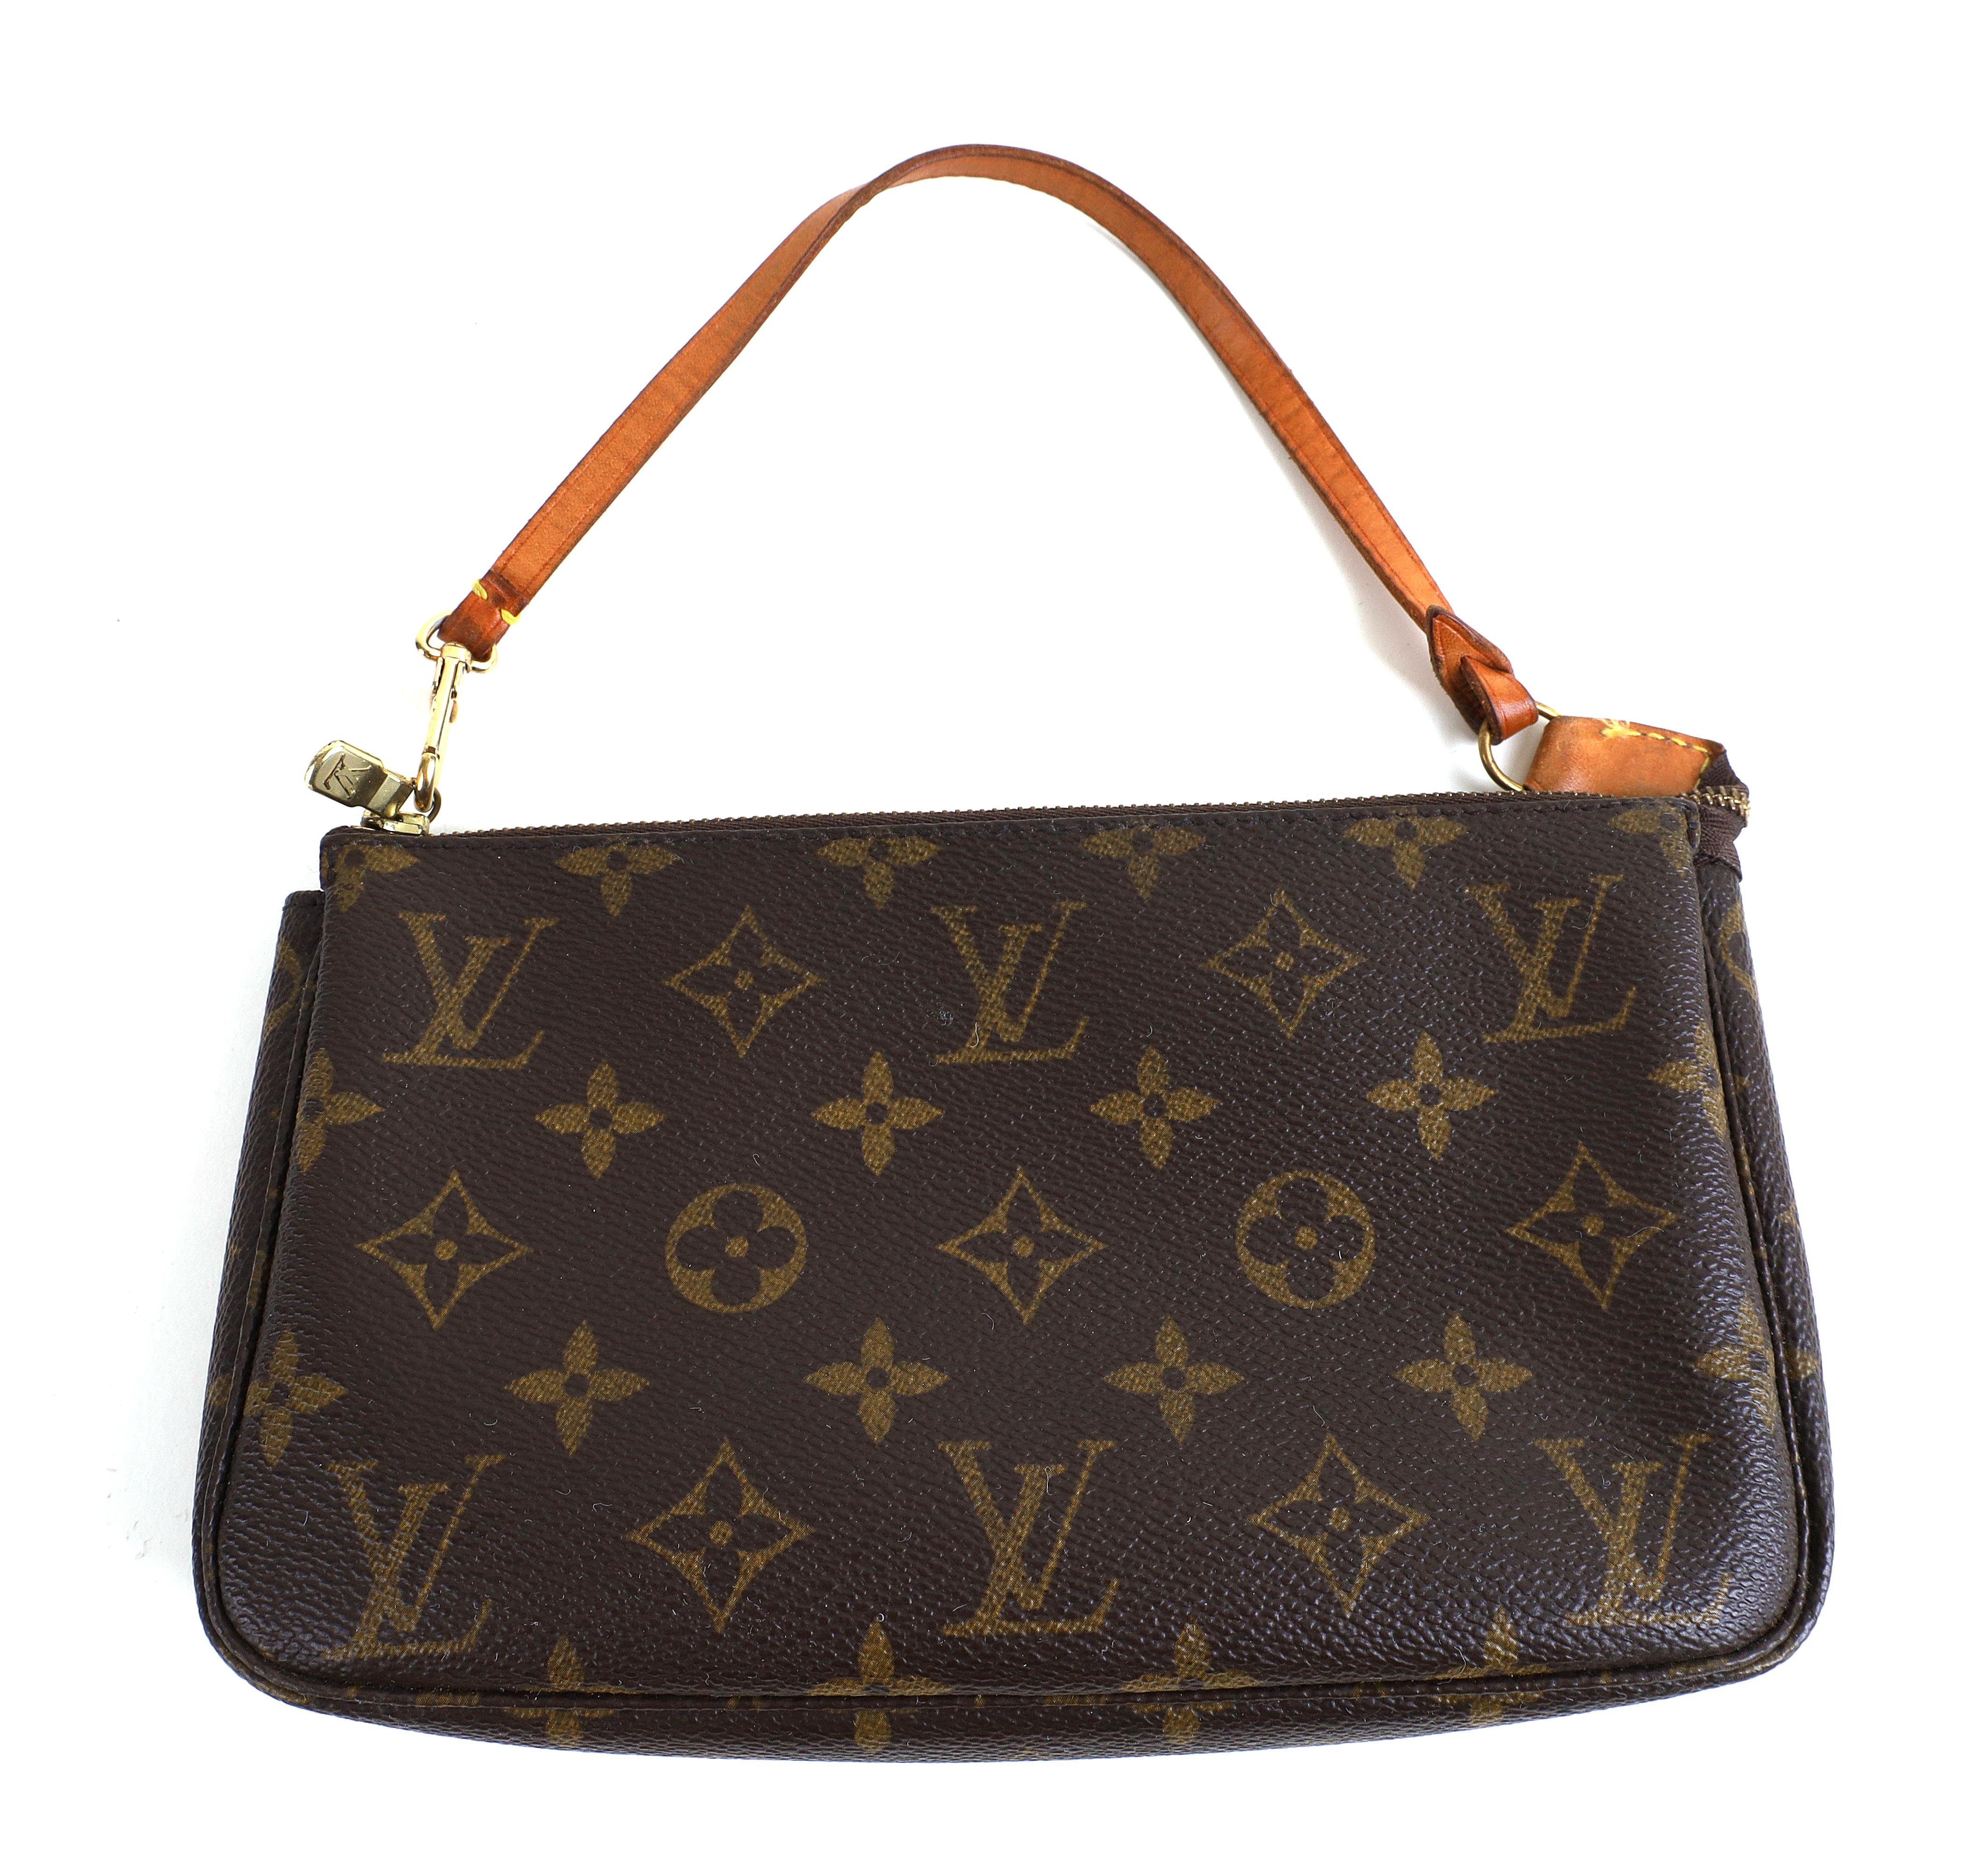 Sold at Auction: Louis VUITTON Classic Pochette Shoulder Bag